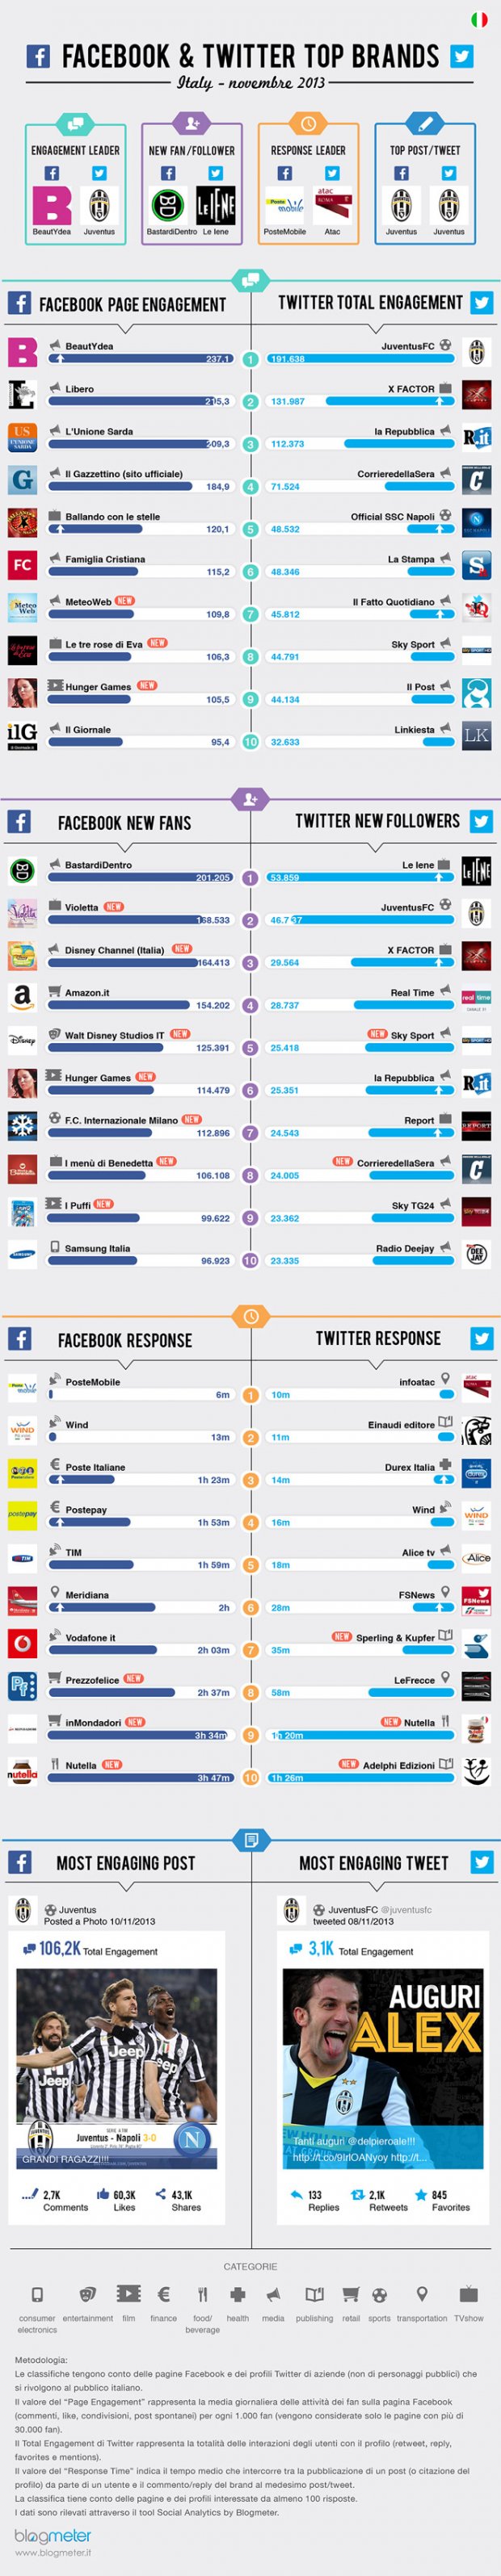 Ecco i migliori brand su Facebook e su Twitter a Novembre 2013